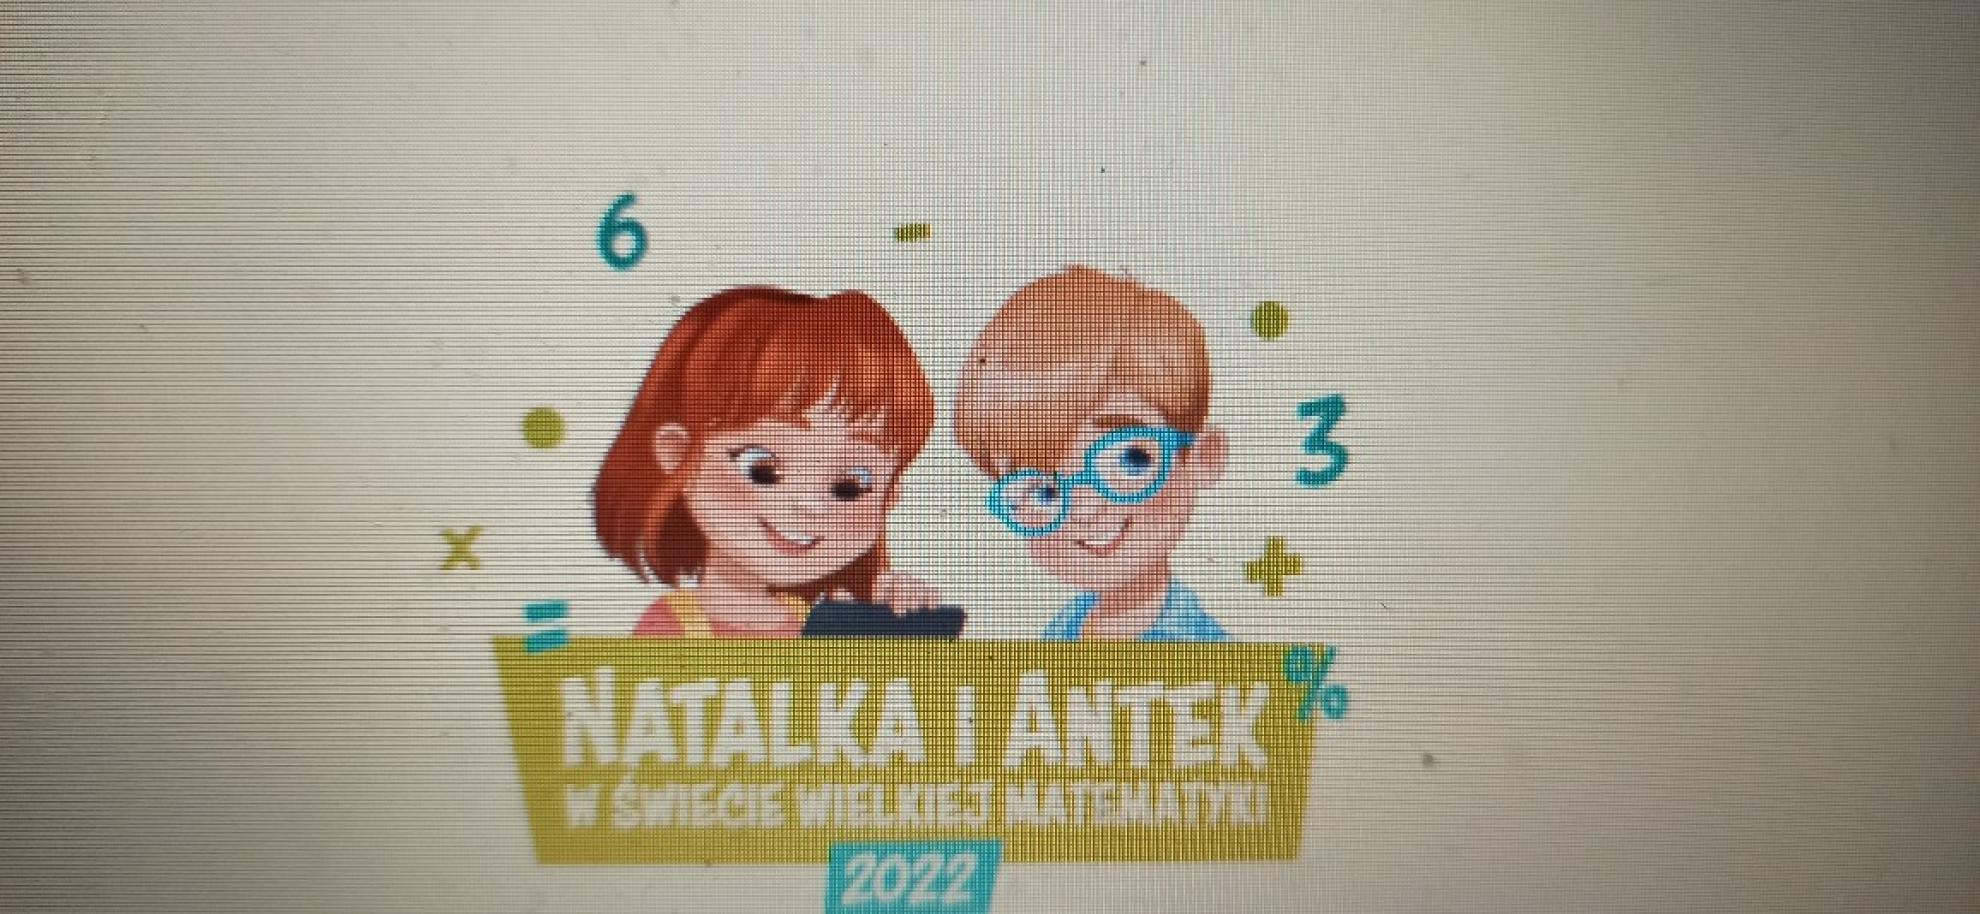 Natalka i Antek w świecie wielkiej matematyki